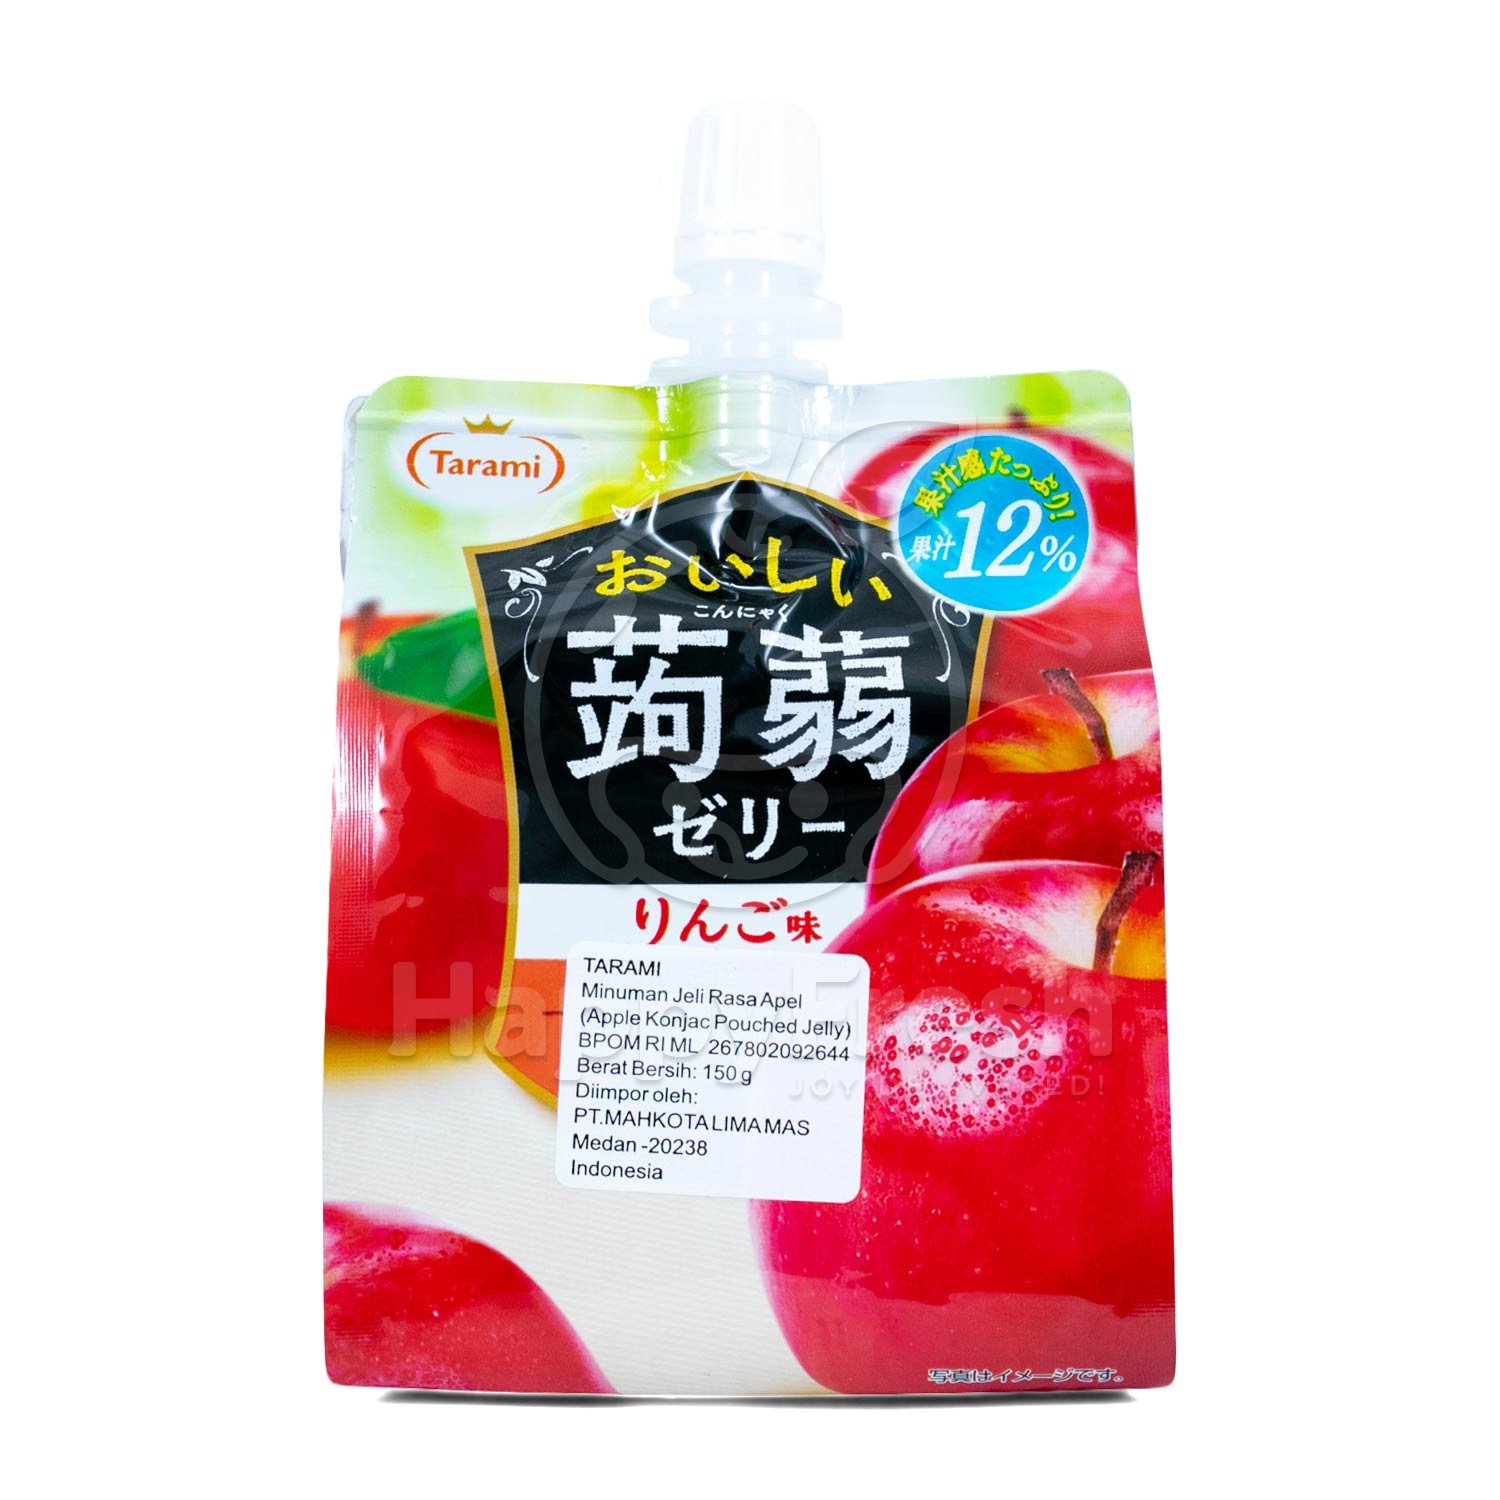 Tarami Apple Konjac Pouch Jelly Drink Happyfresh